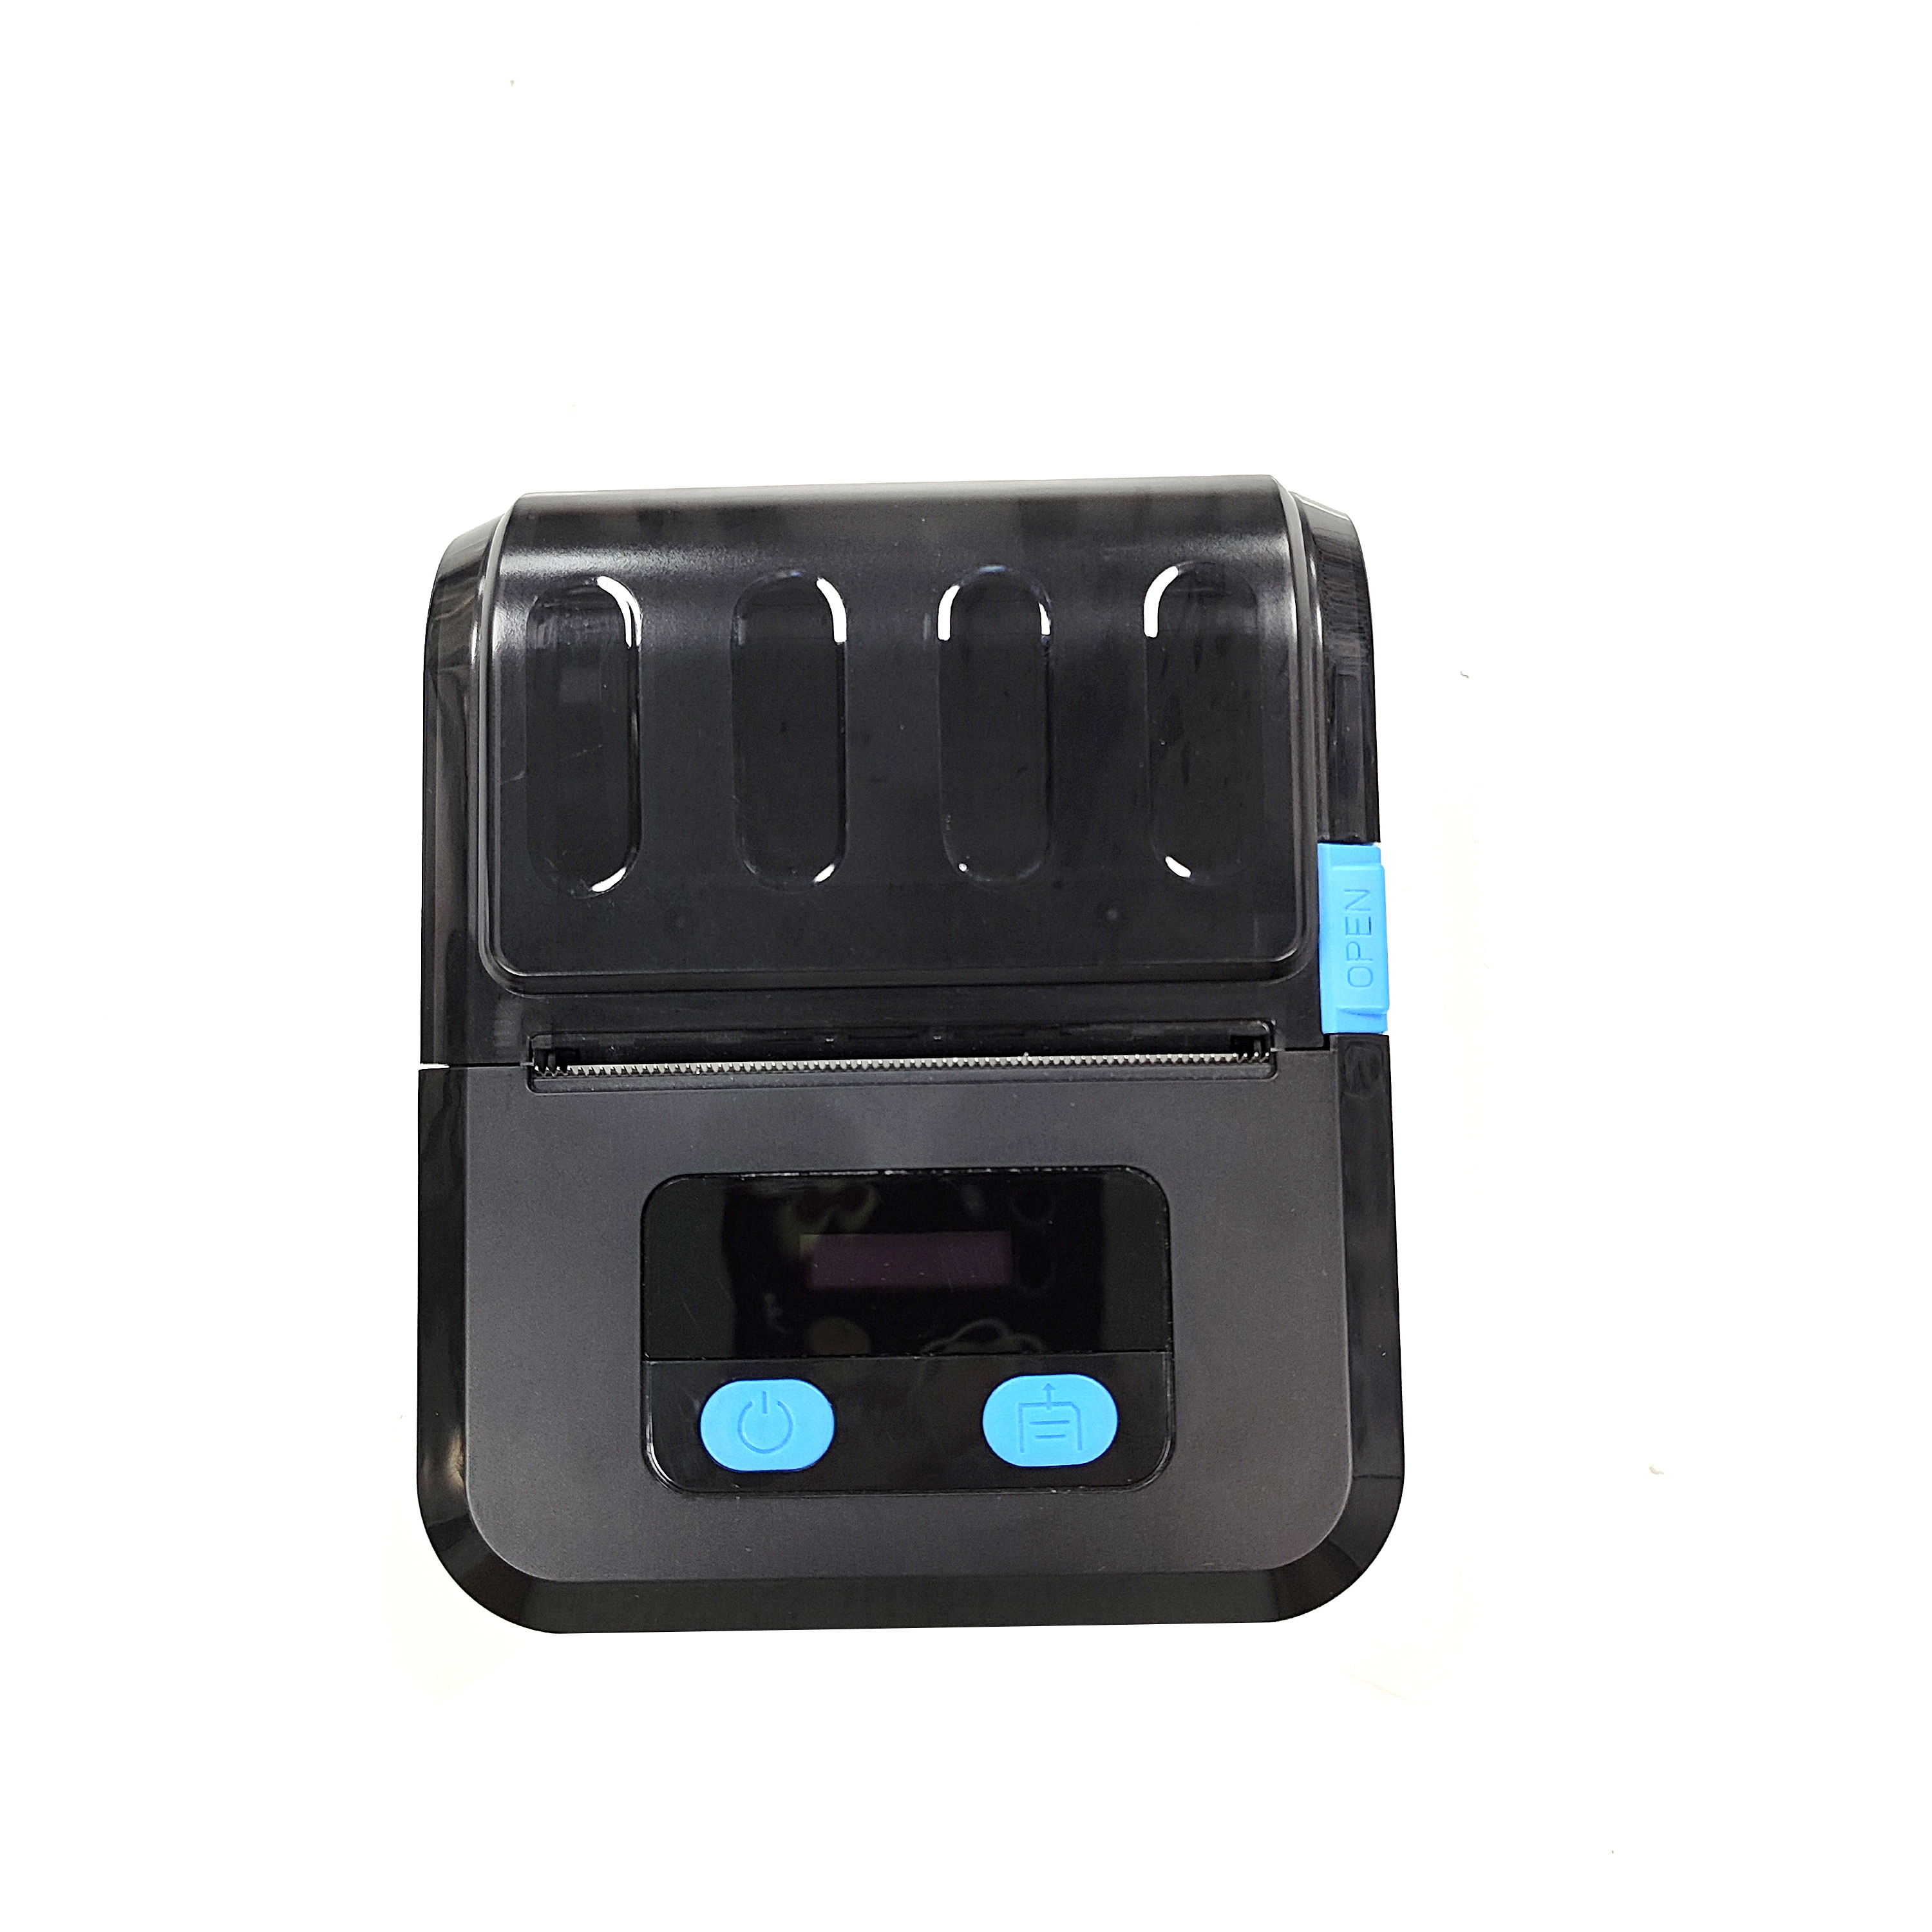 (OCBP-M89) logiciel gratuit noir mini-imprimante de codes à barres usb bluetooth sans fil de 50mm de diamètre